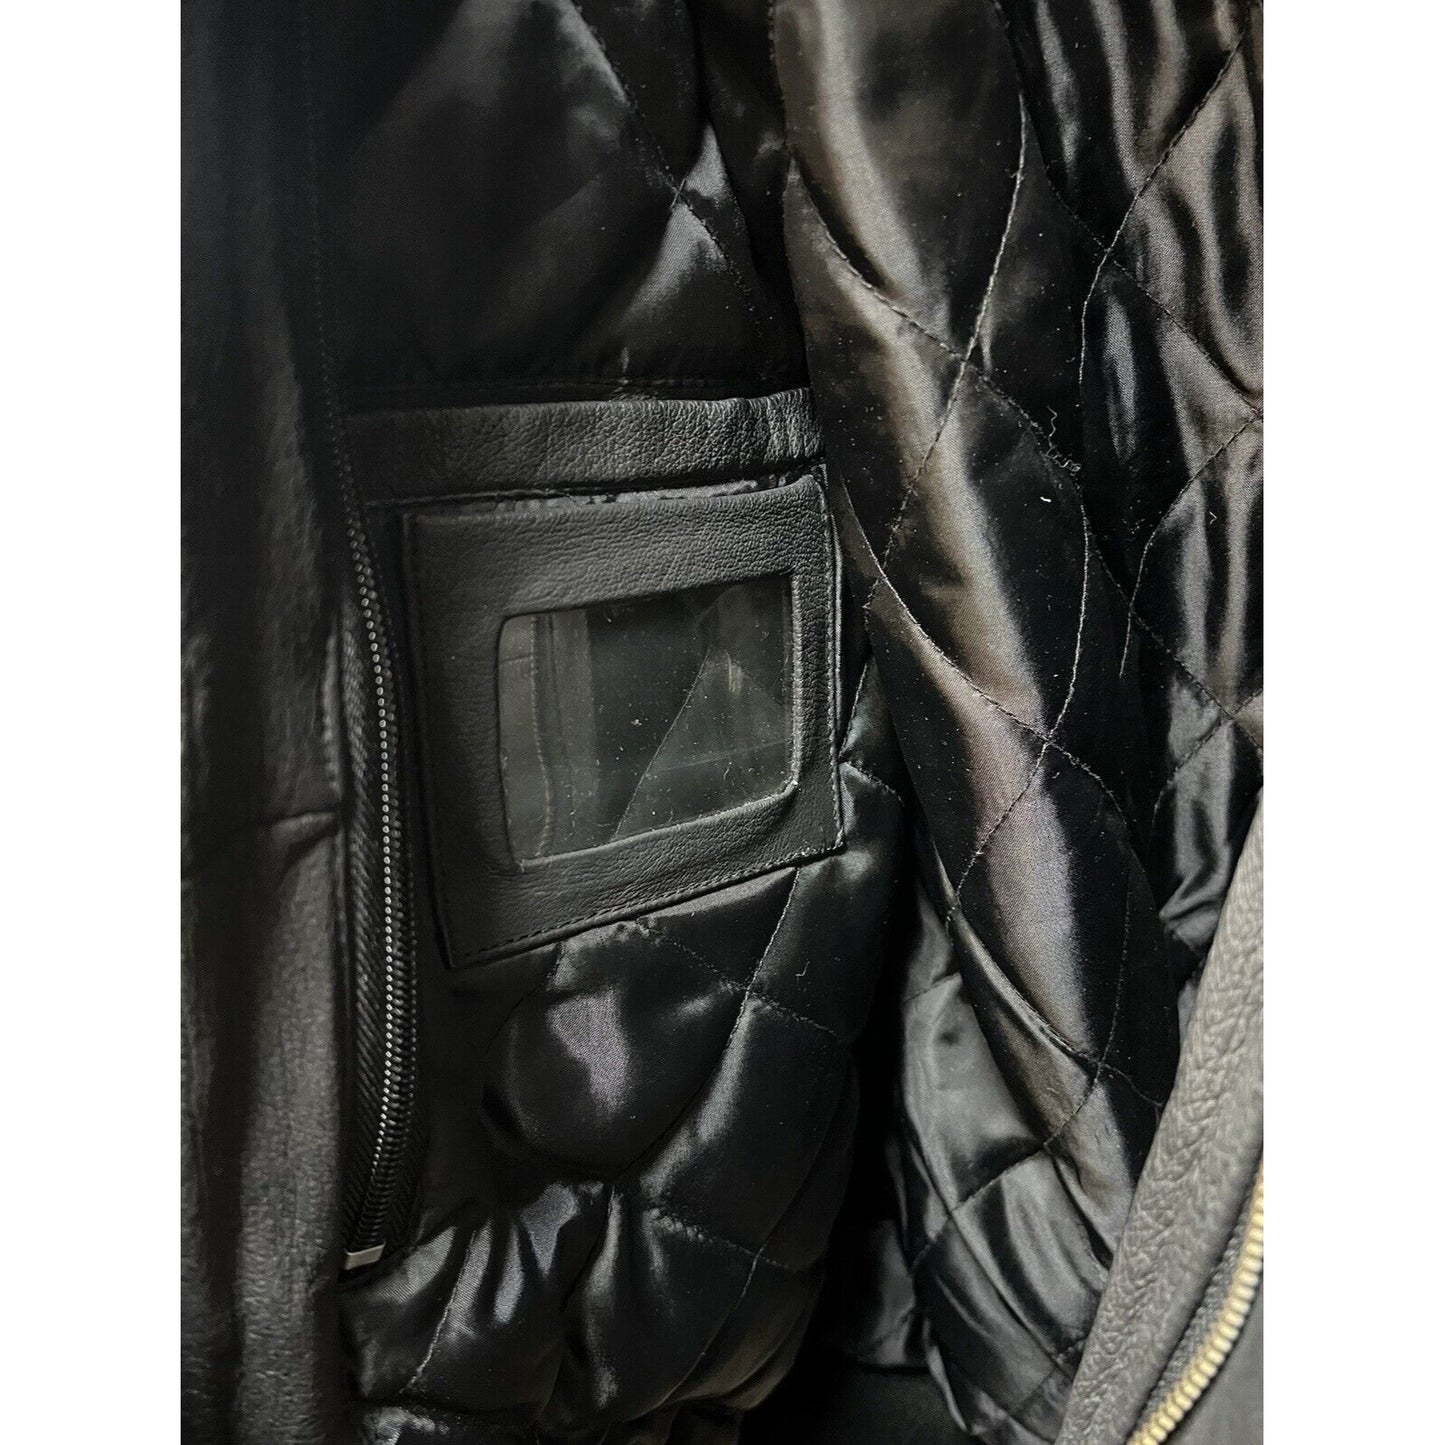 DreamWorks SKG Collared Black Leather Bomber Jacket - Large